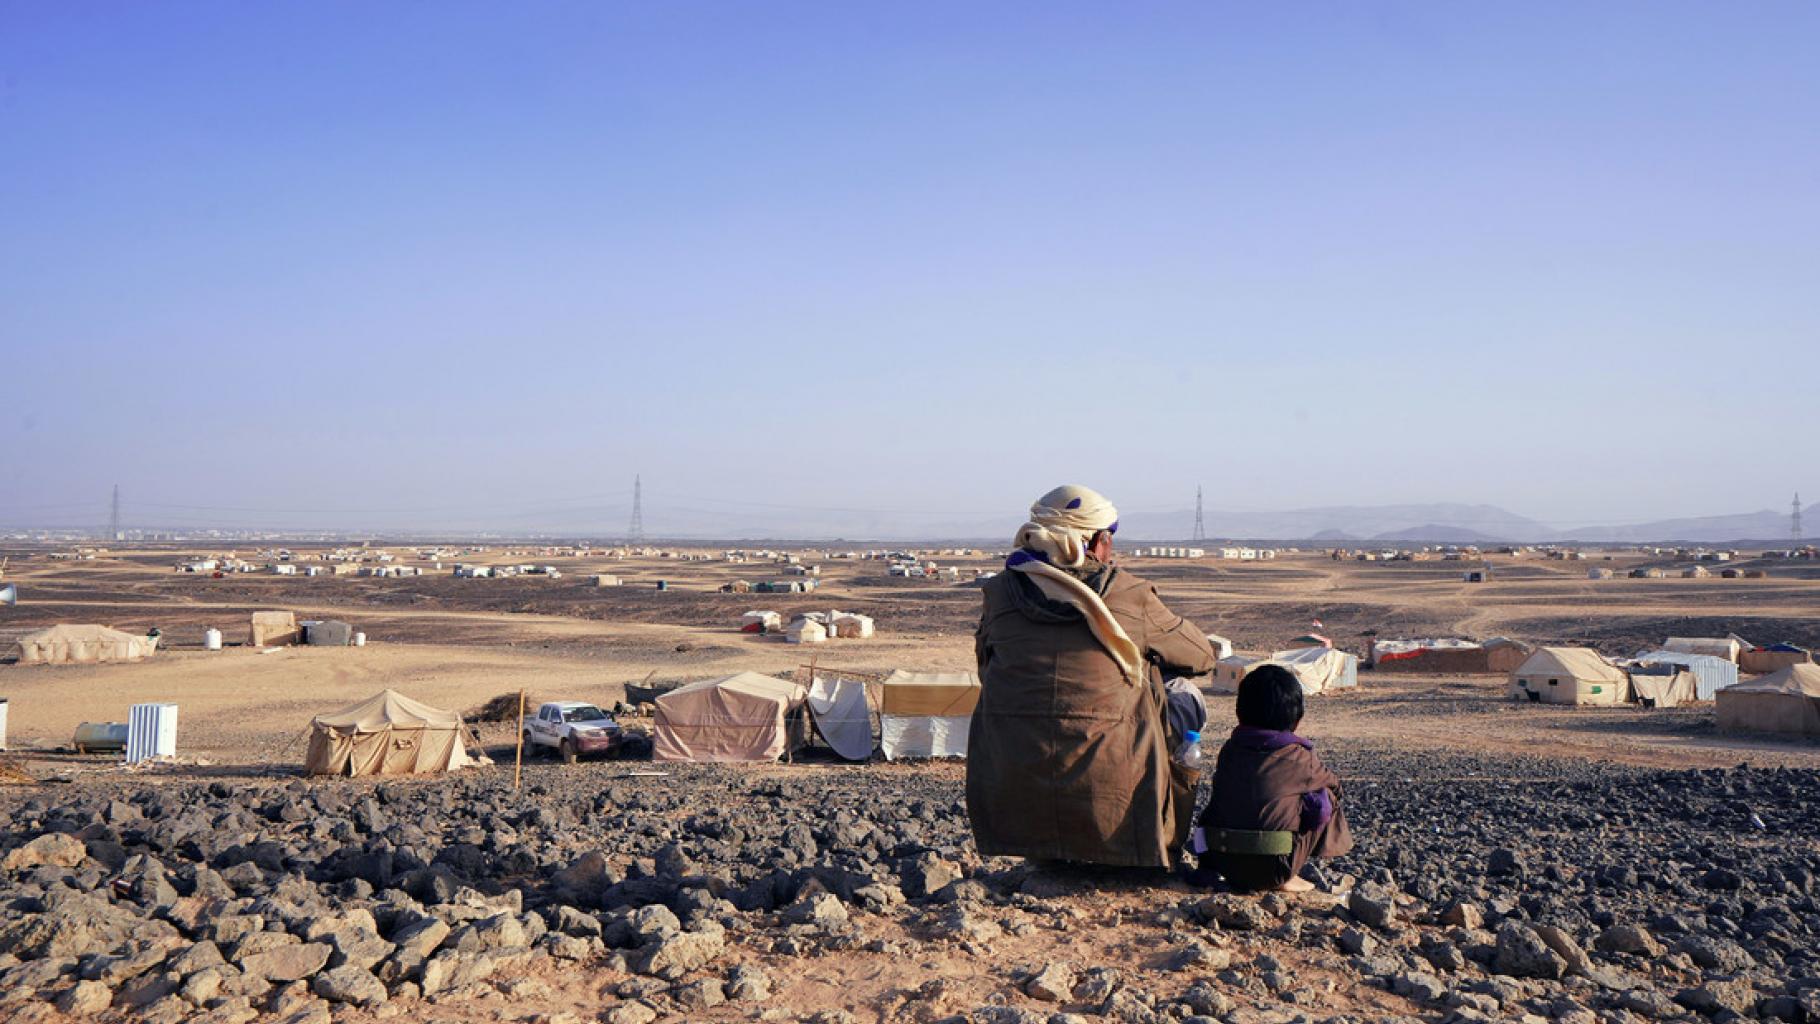 Ein Vater und sein siebenjähriger Sohn sitzen auf einem Hügel und schauen hinunter auf das Geflüchtetencamp Alswidan in Marib (Jemen). Weit und breit sind nur trostlose Steinwüste und einige Zelte zu sehen.